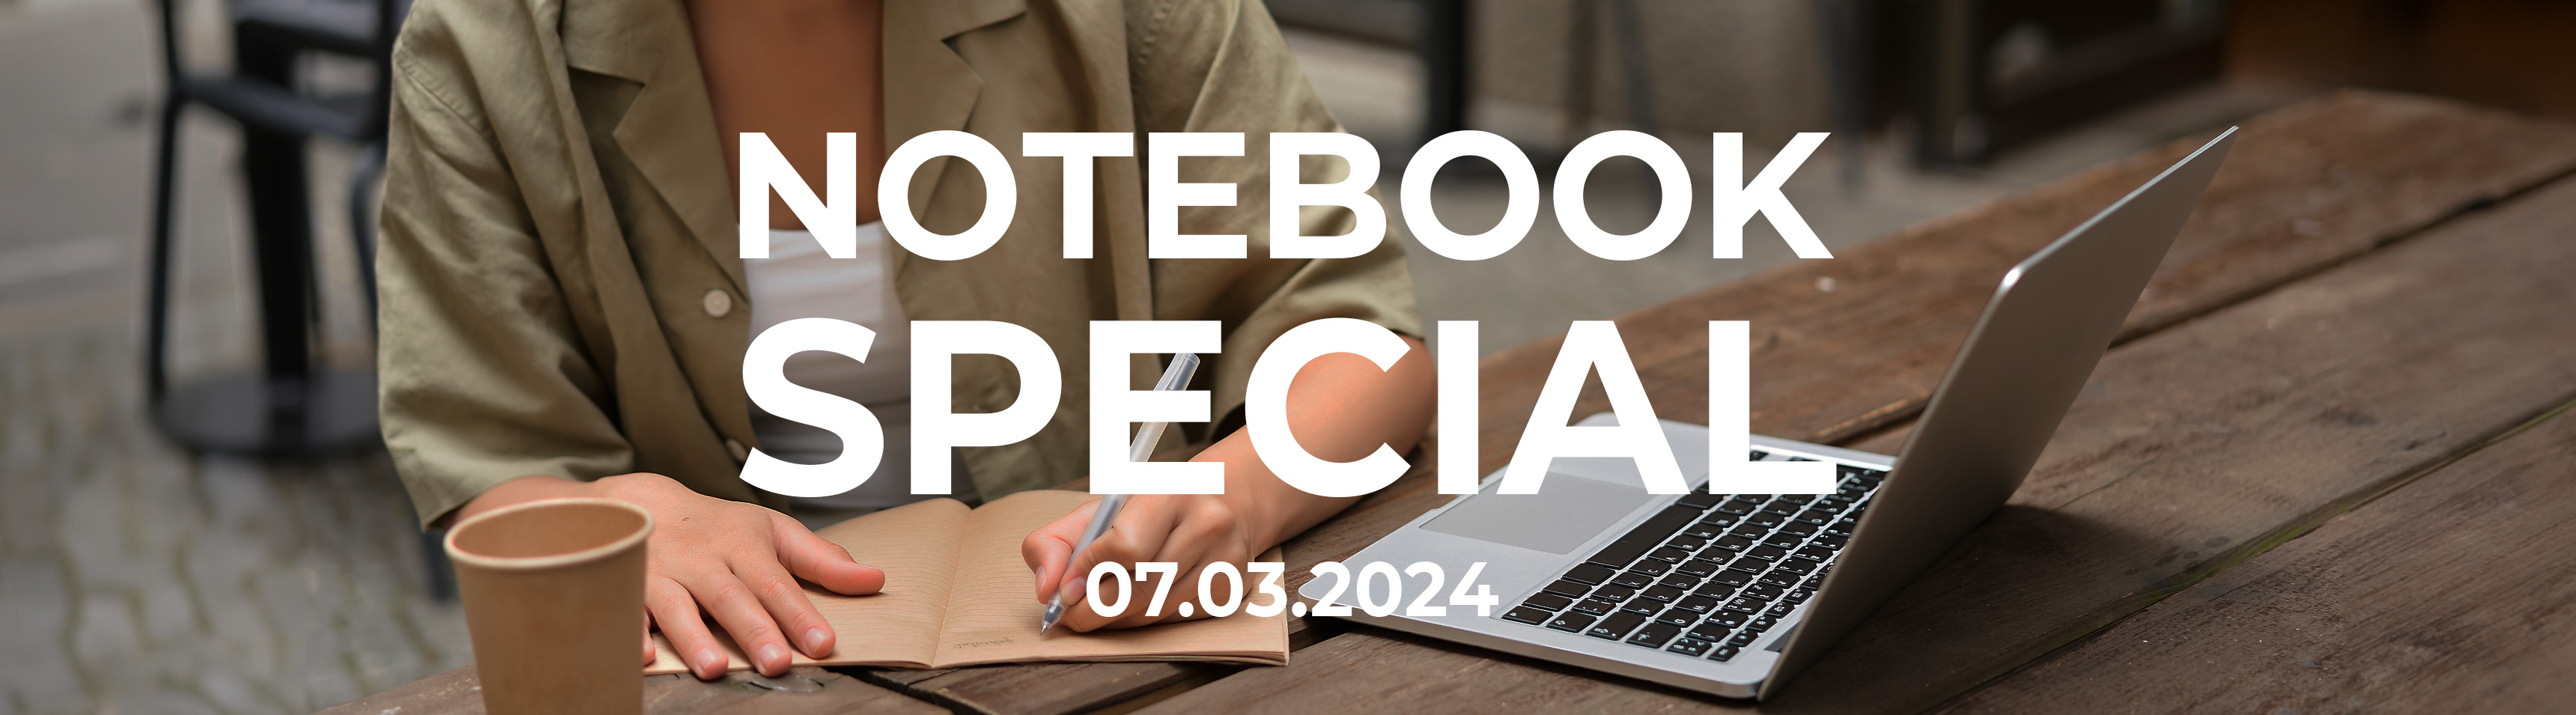 Notebook-Special bei DayDeal.ch 